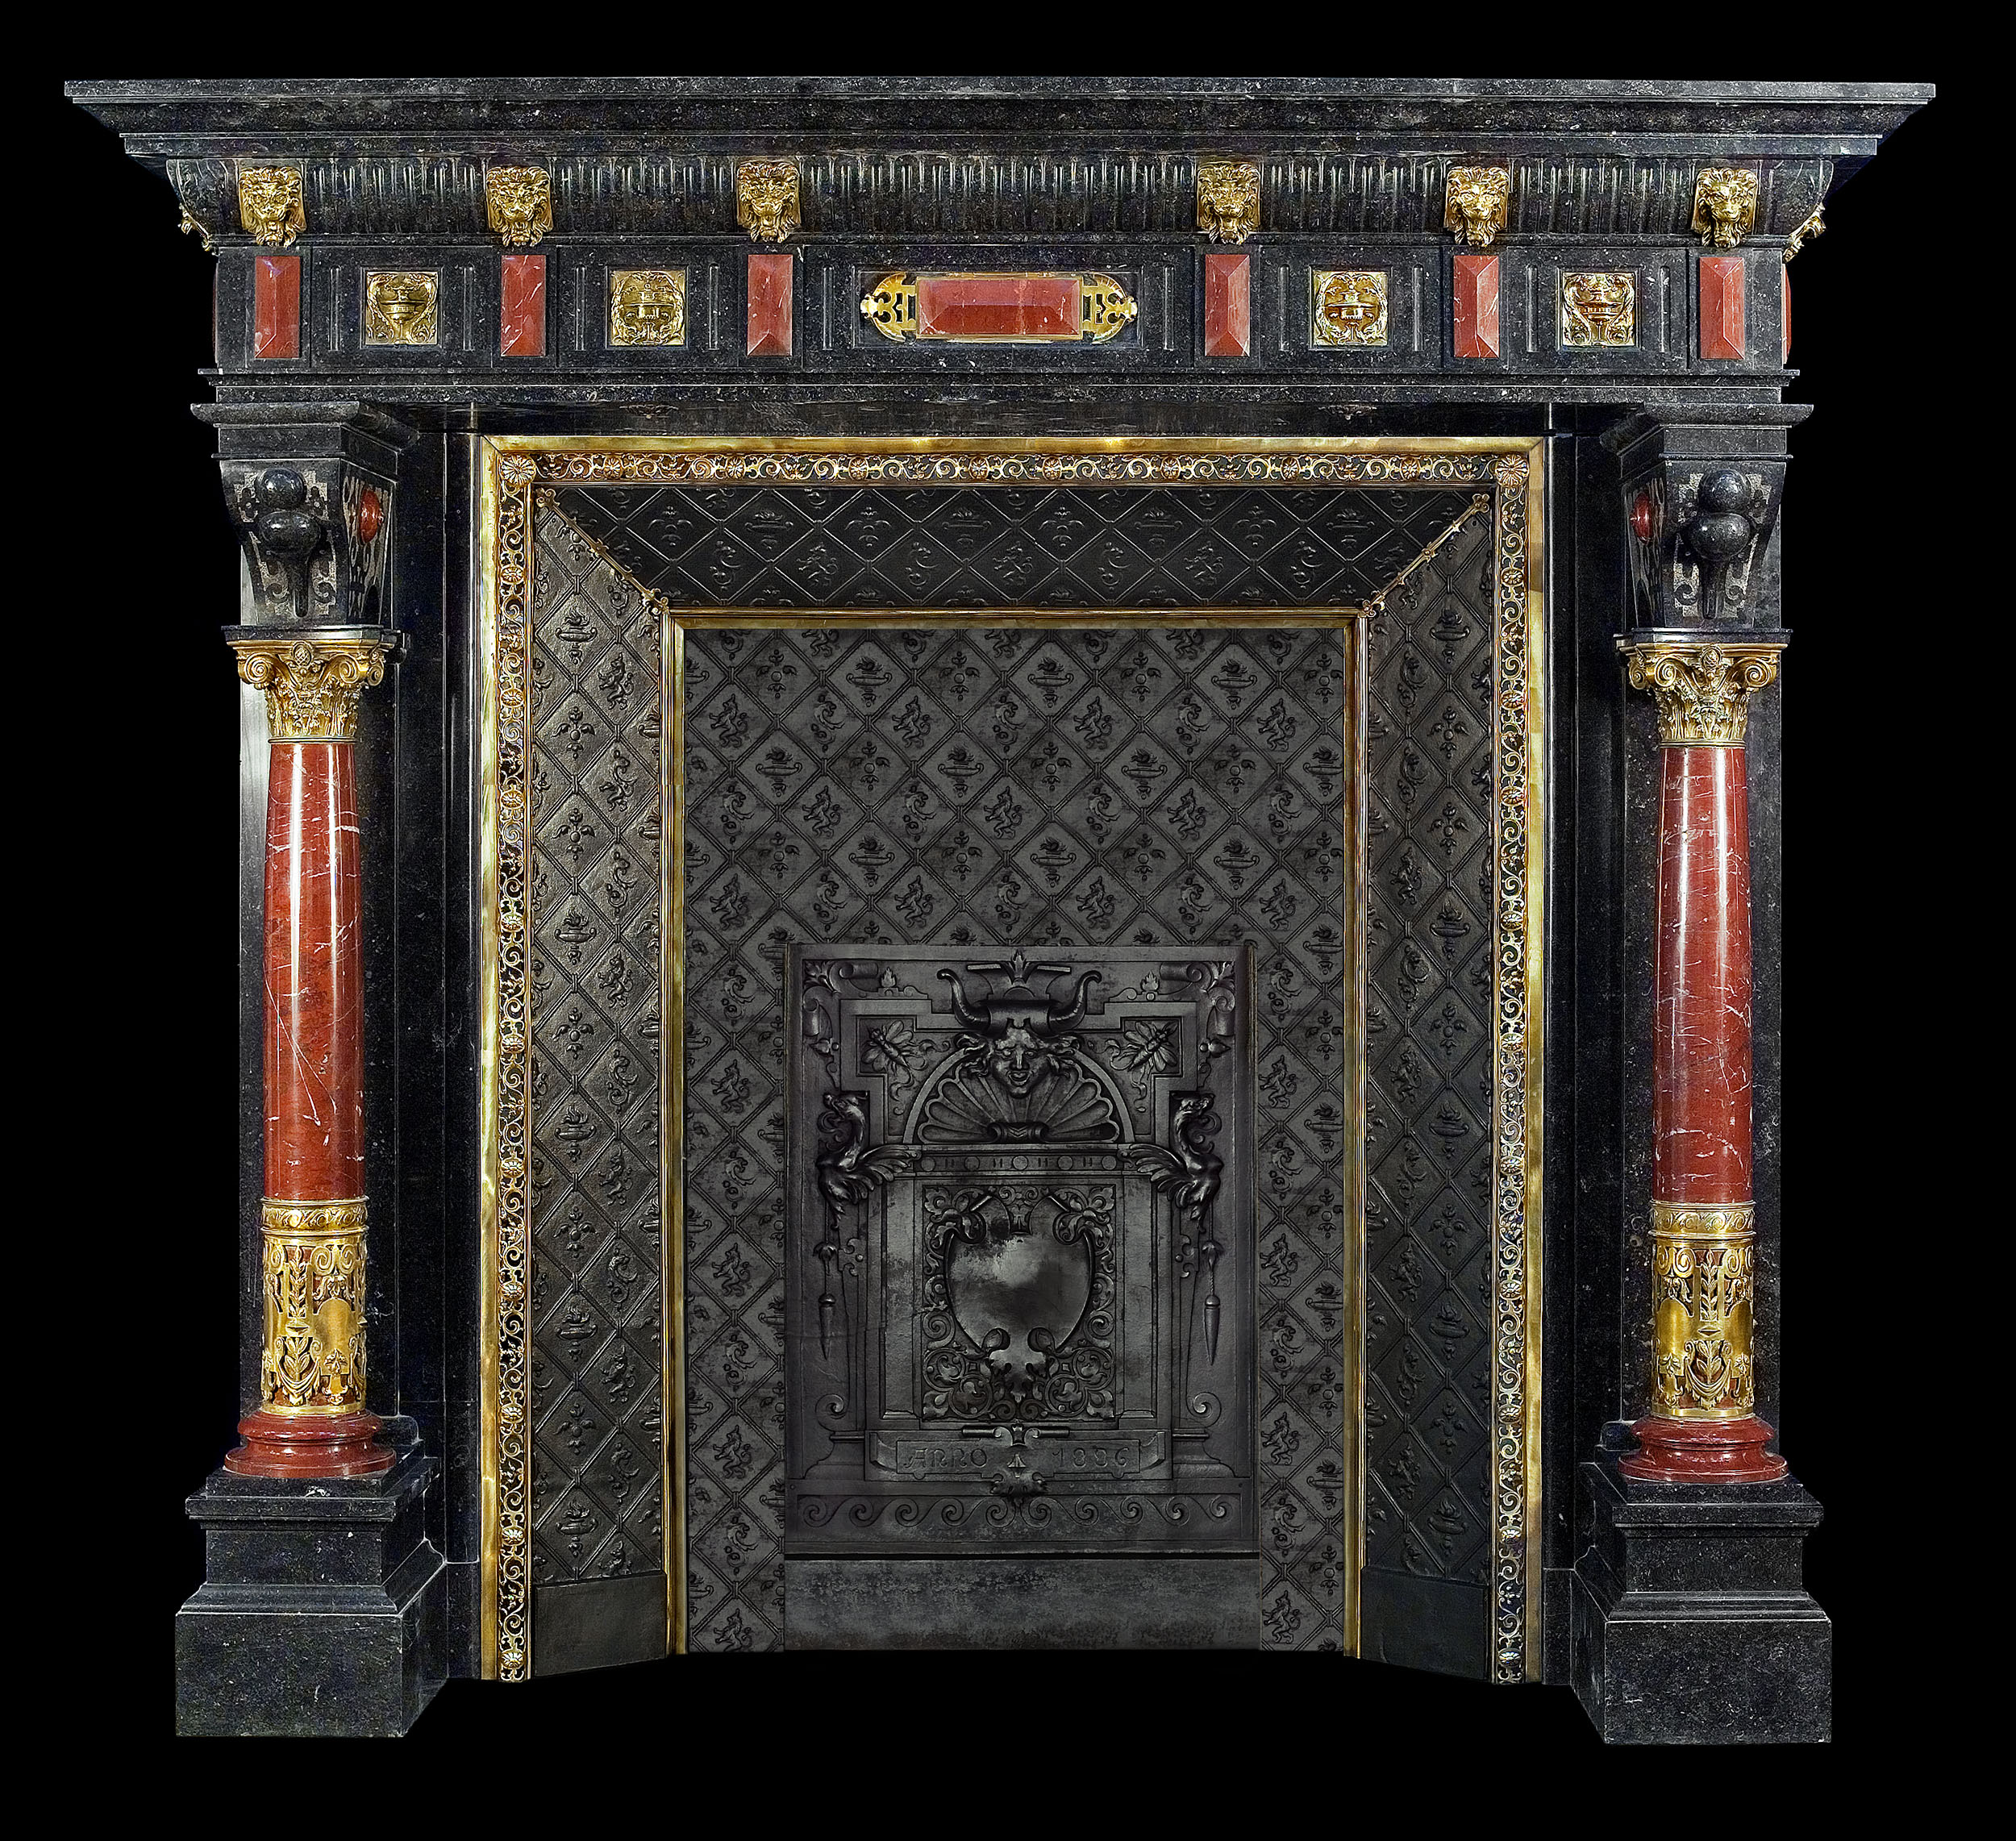 A Flemish Renaissance style antique marble fireplace